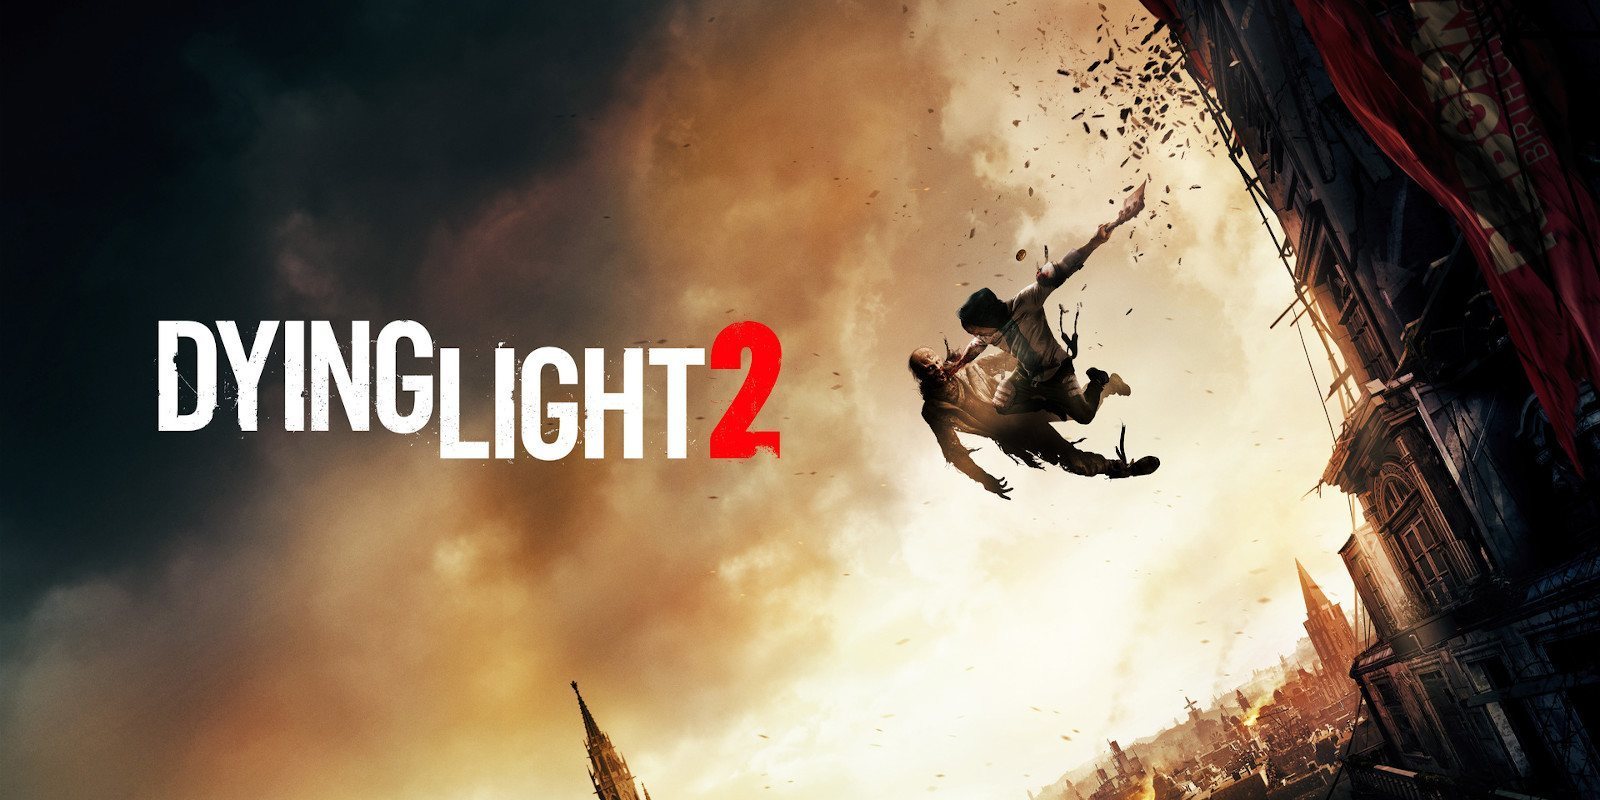 Director de 'Dying Light 2': Los mundos abiertos necesitan ser mejores, no más grandes